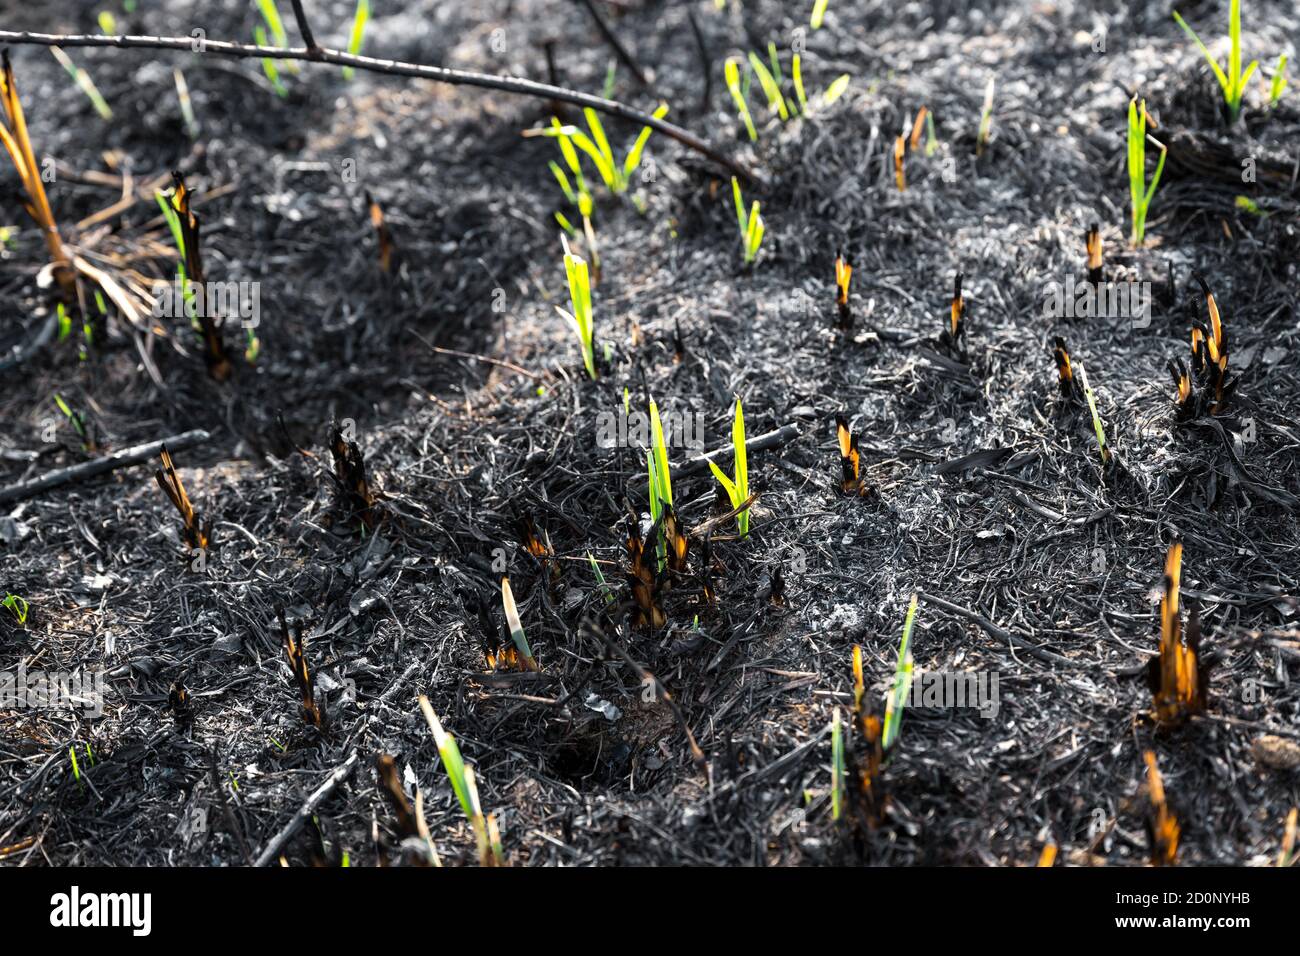 Les jeunes herbes vertes poussent du sol brûlé recouvert de cendres. Banque D'Images